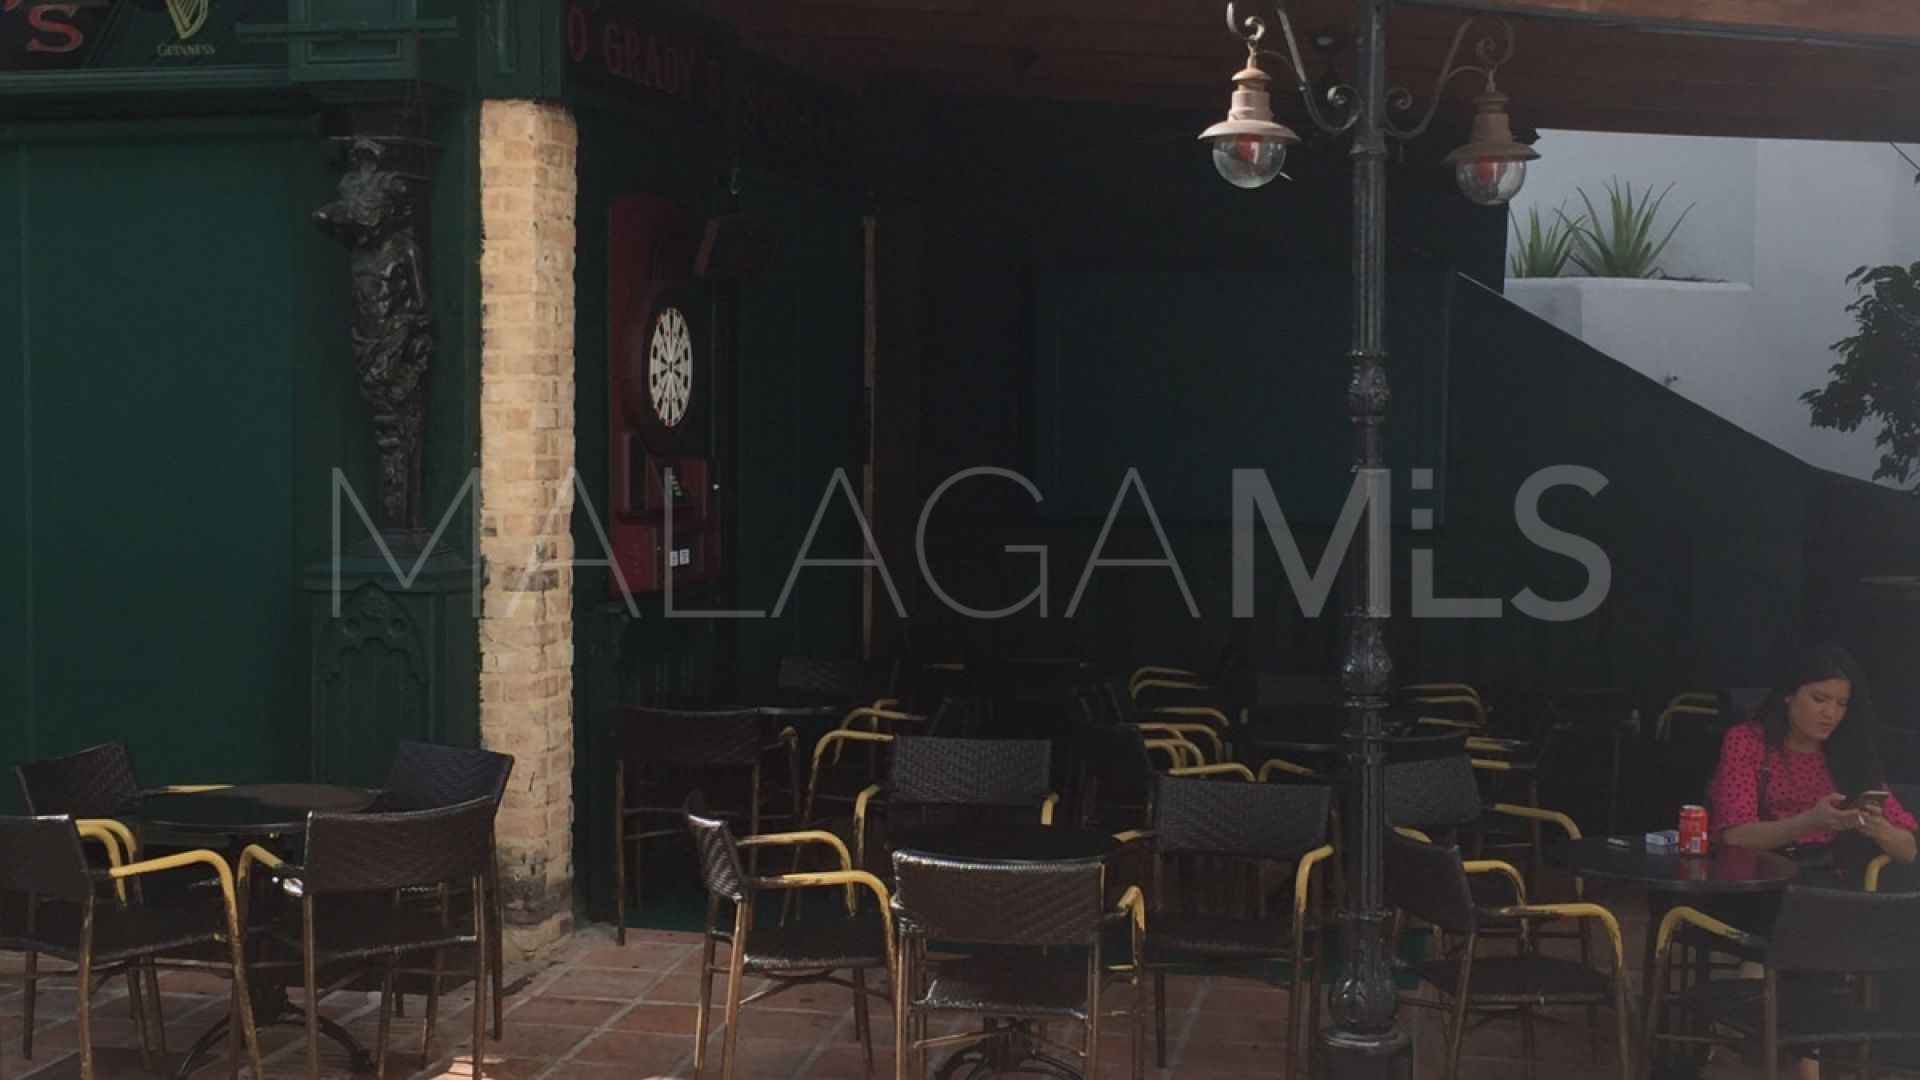 Bar for sale in Marbella - Puerto Banus